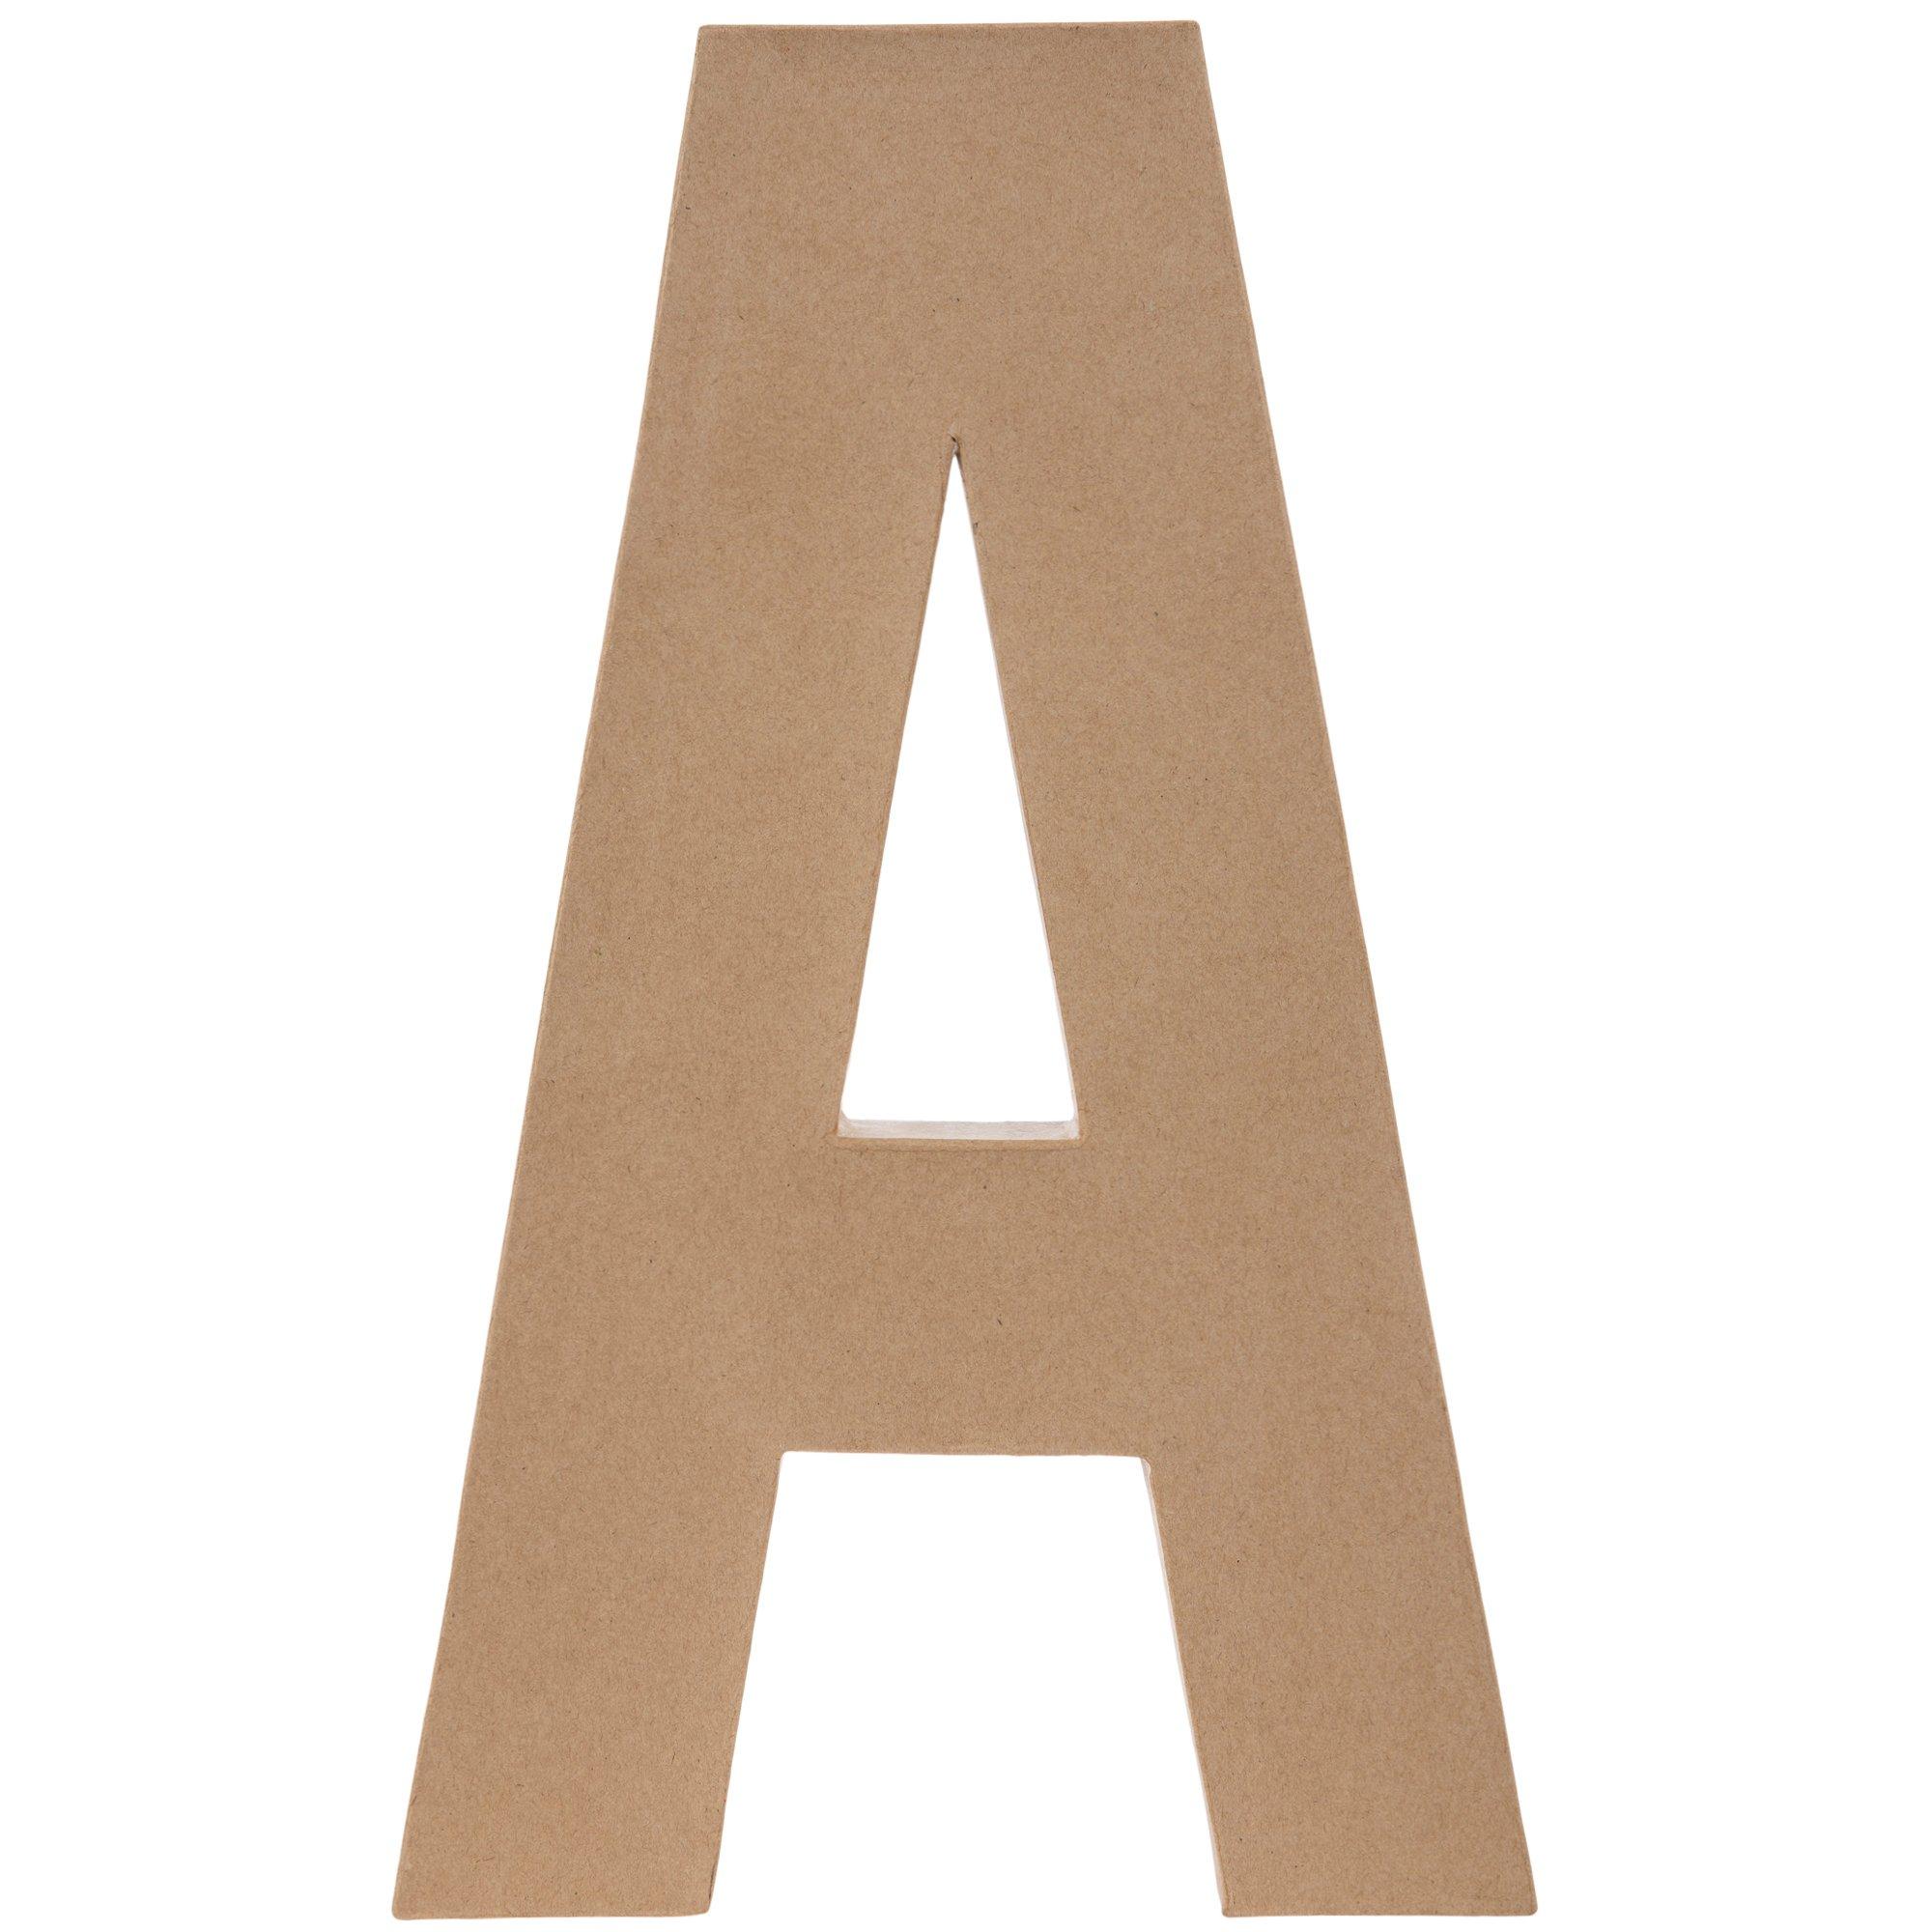 7 Best Large cardboard letters ideas  cardboard letters, large cardboard  letters, balloon decorations